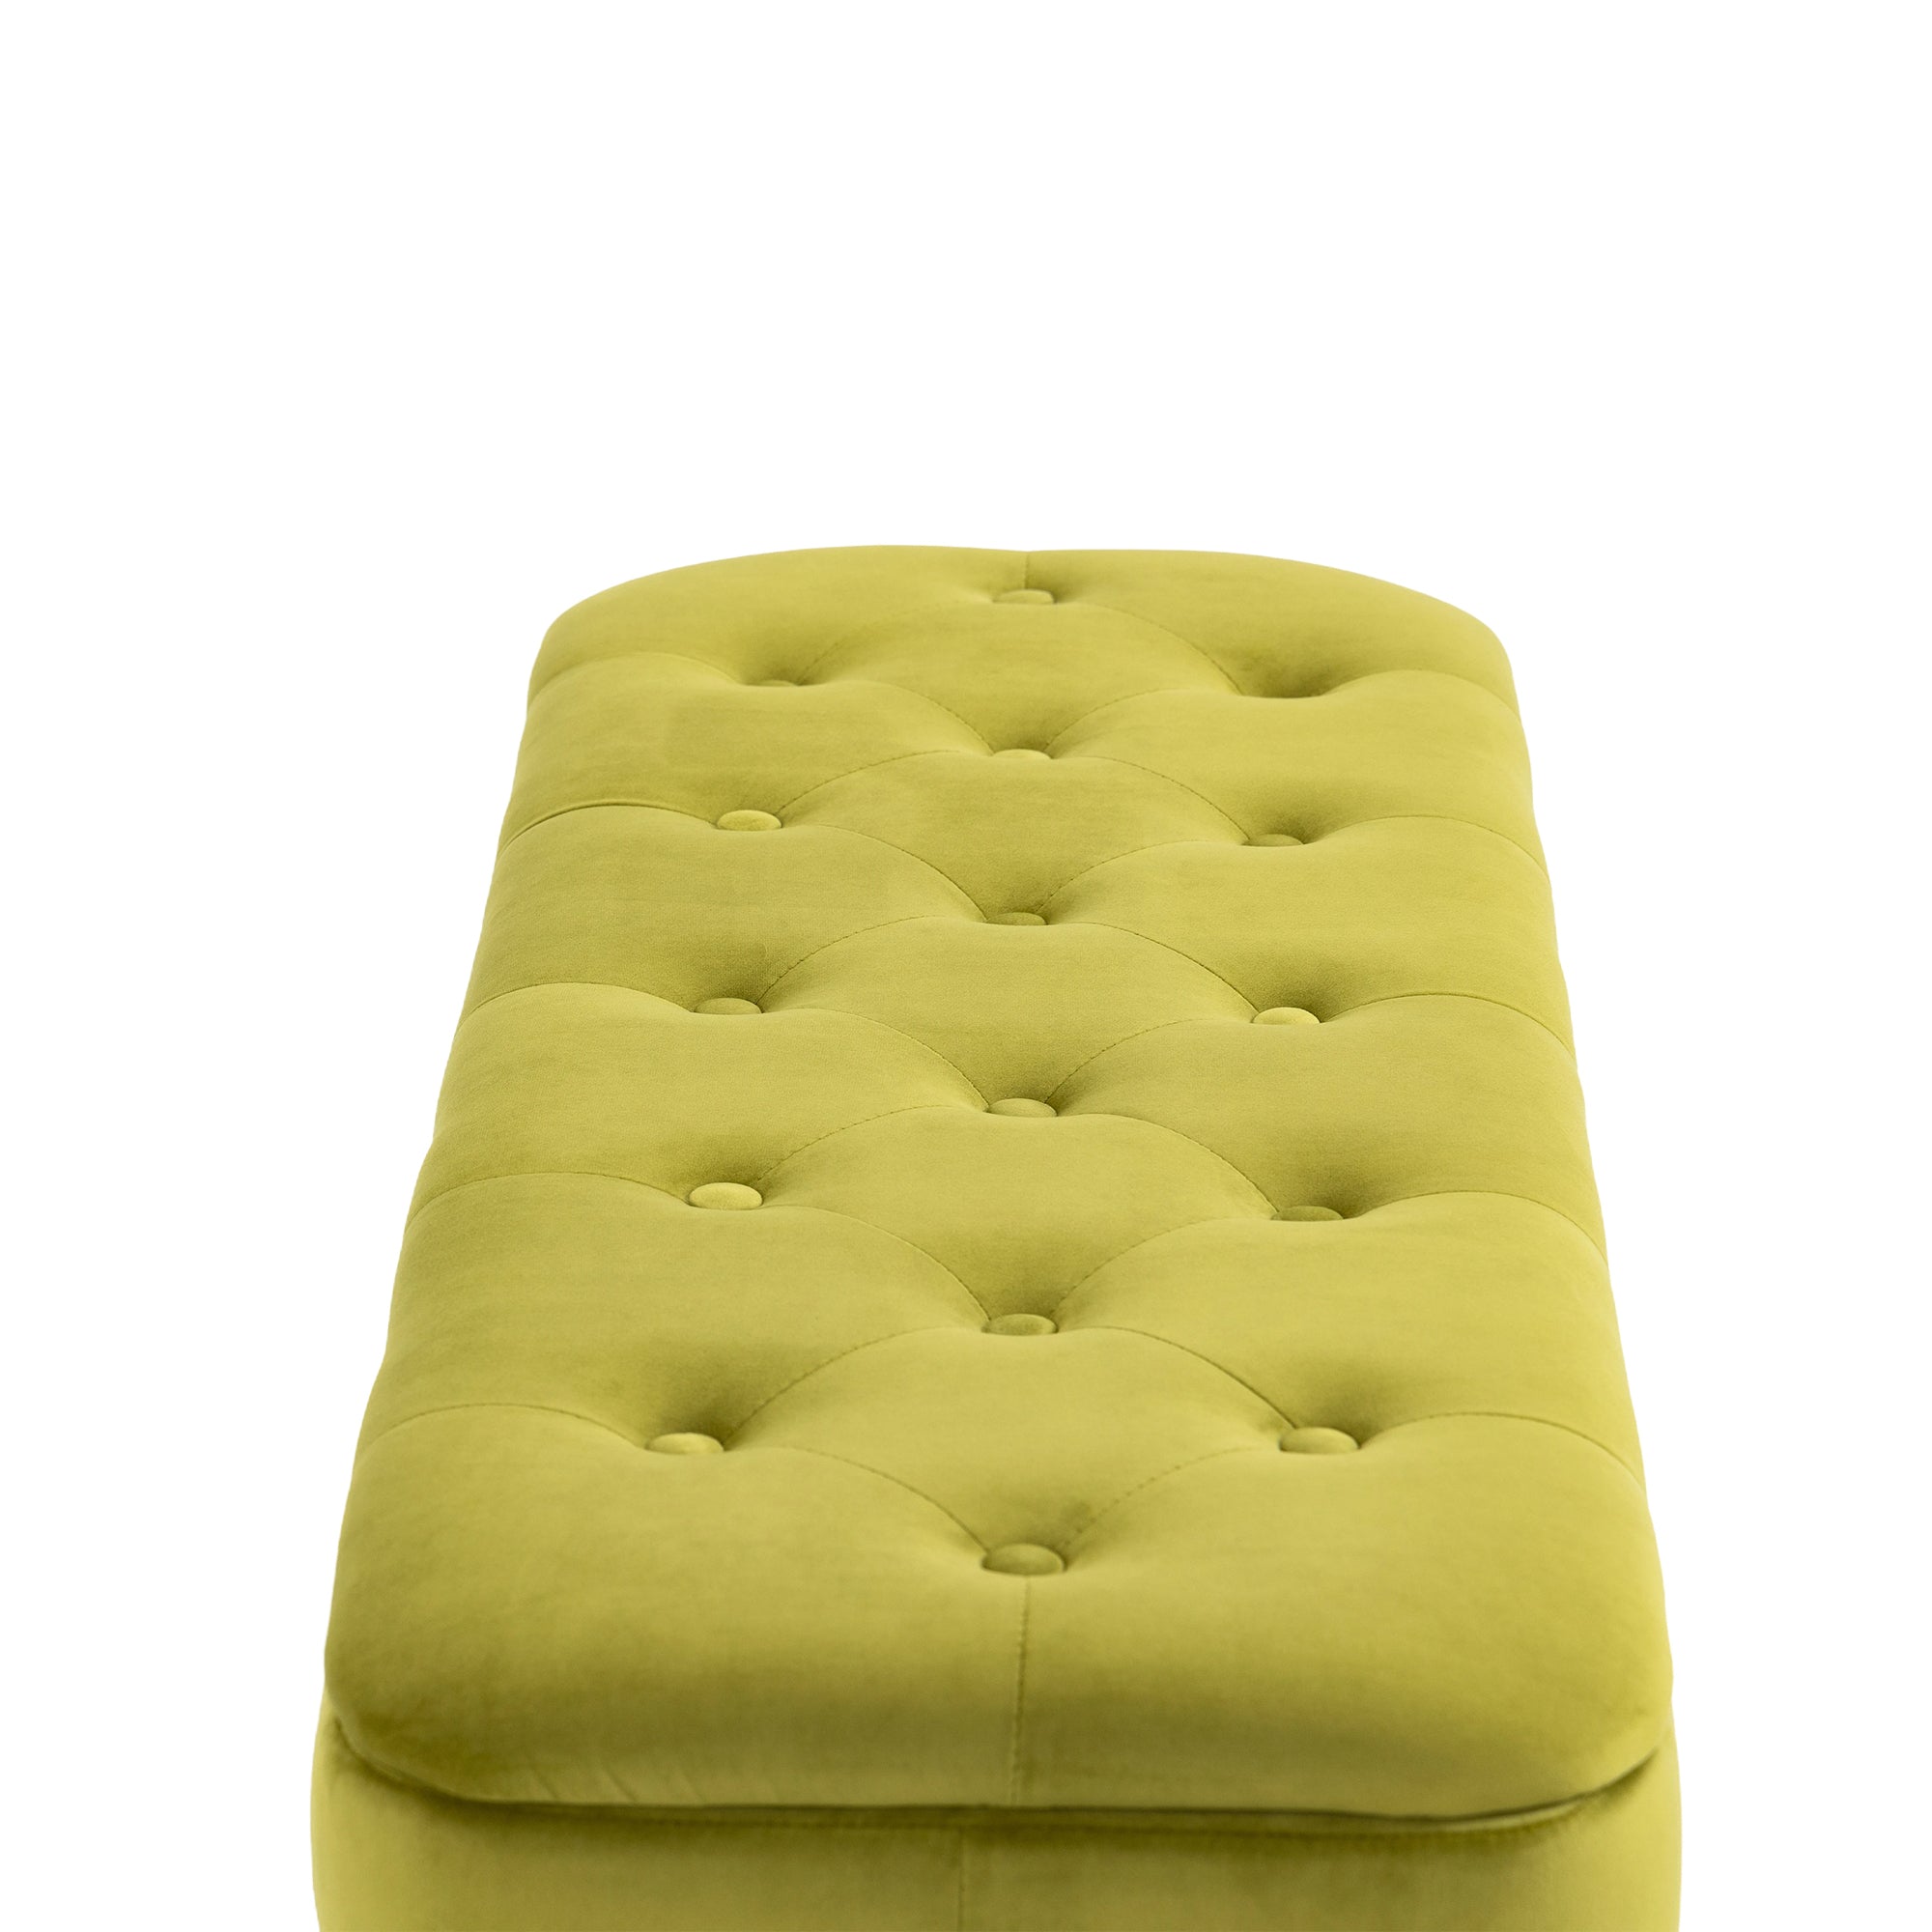 COOLMORE Storage Ottoman,Bedroom End Bench,Upholstered olive-velvet